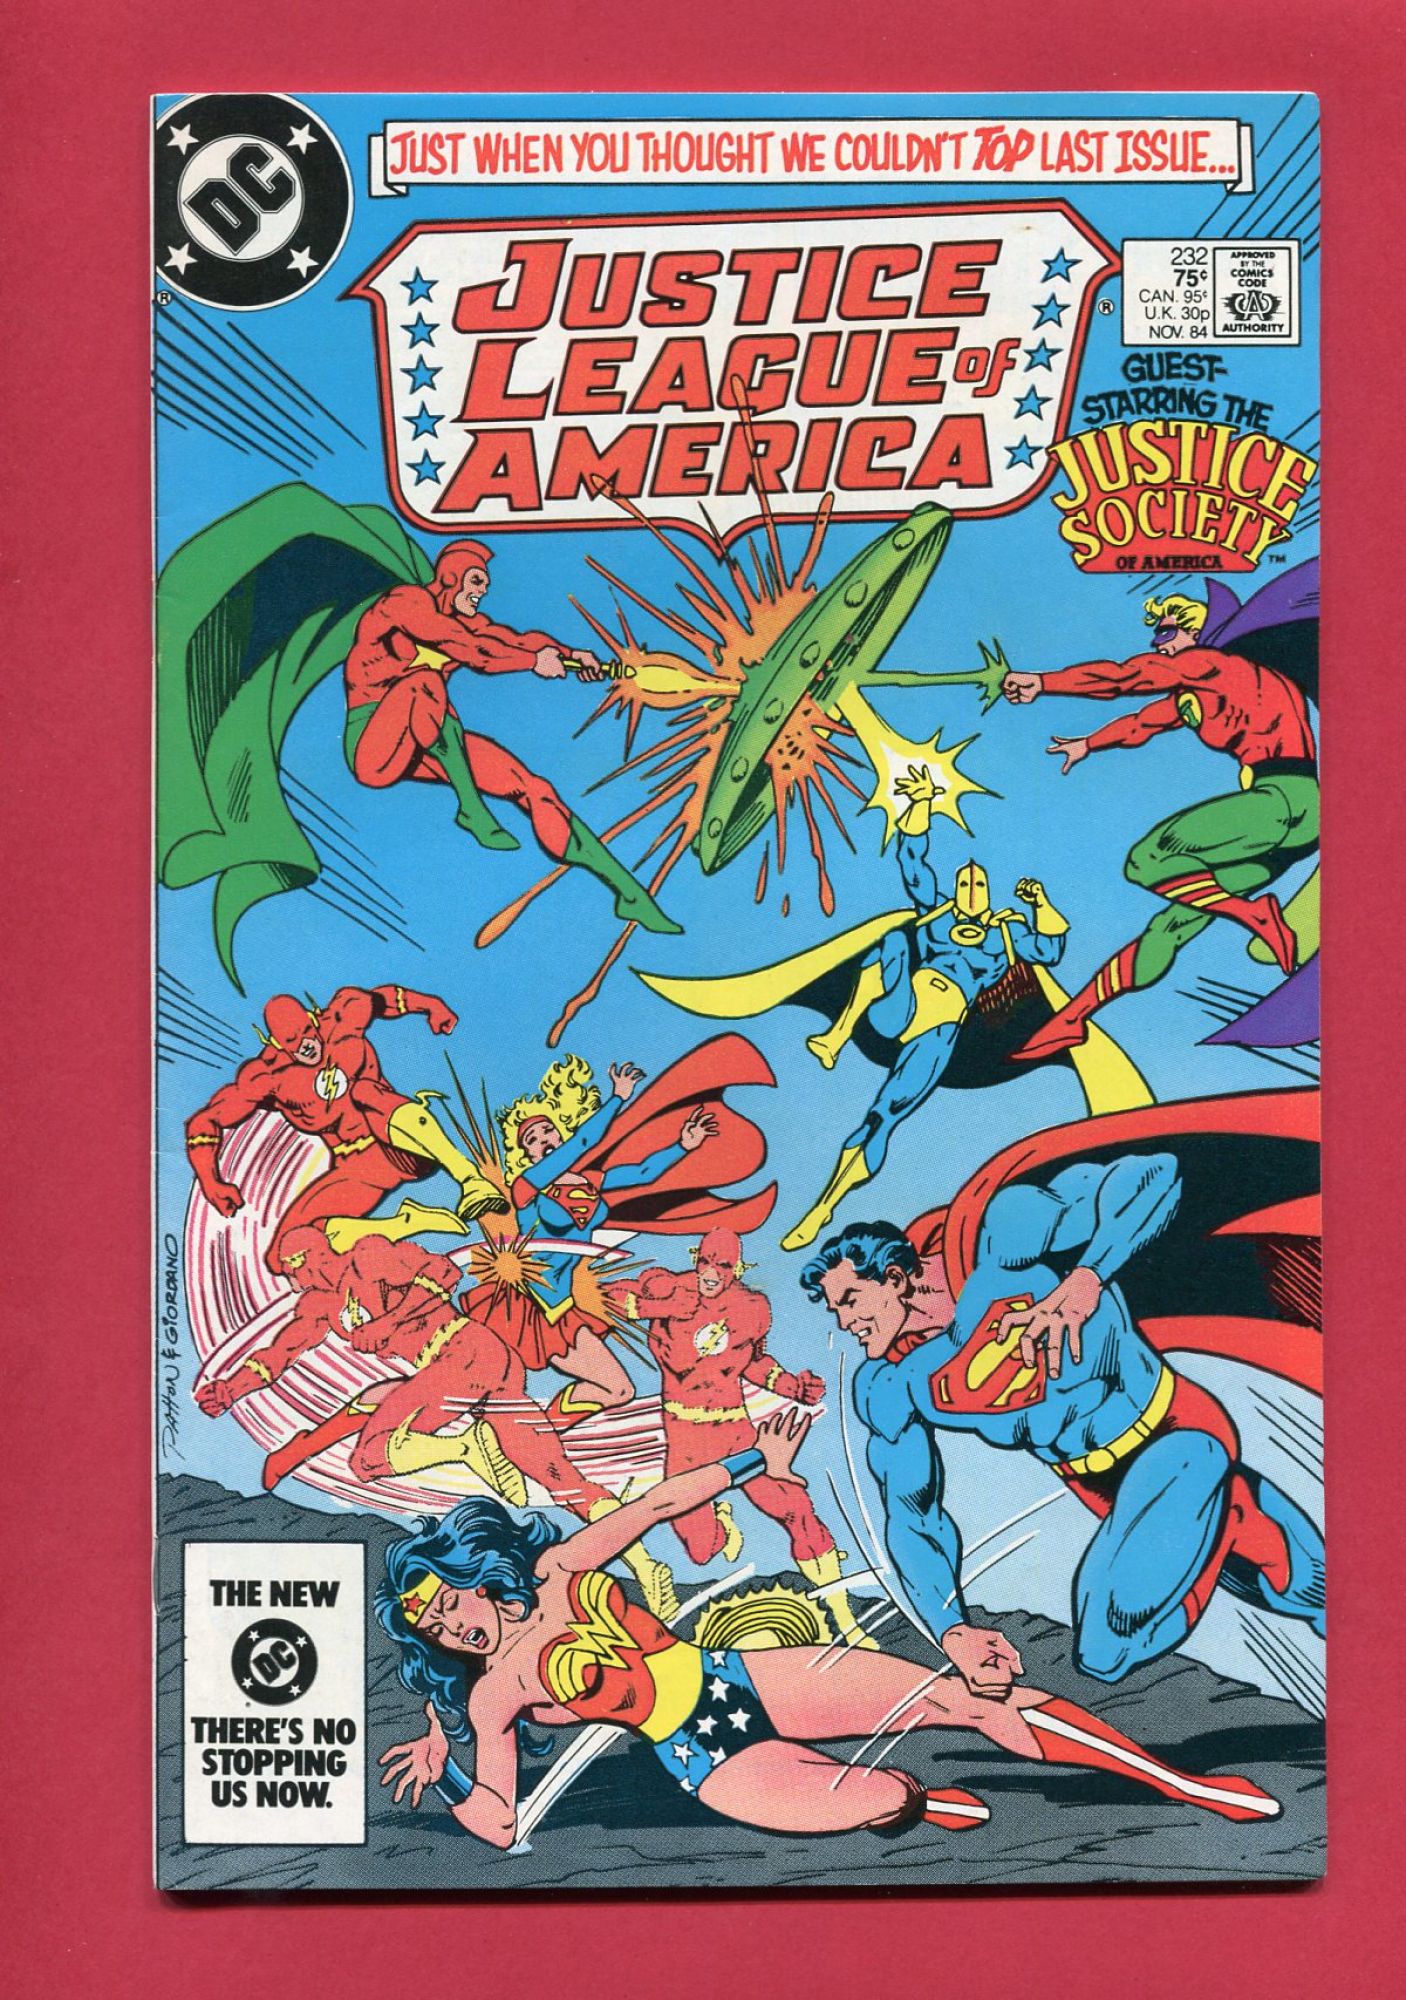 Justice League of America (Volume 1 1960) #232, Nov 1984, 9.2 NM-